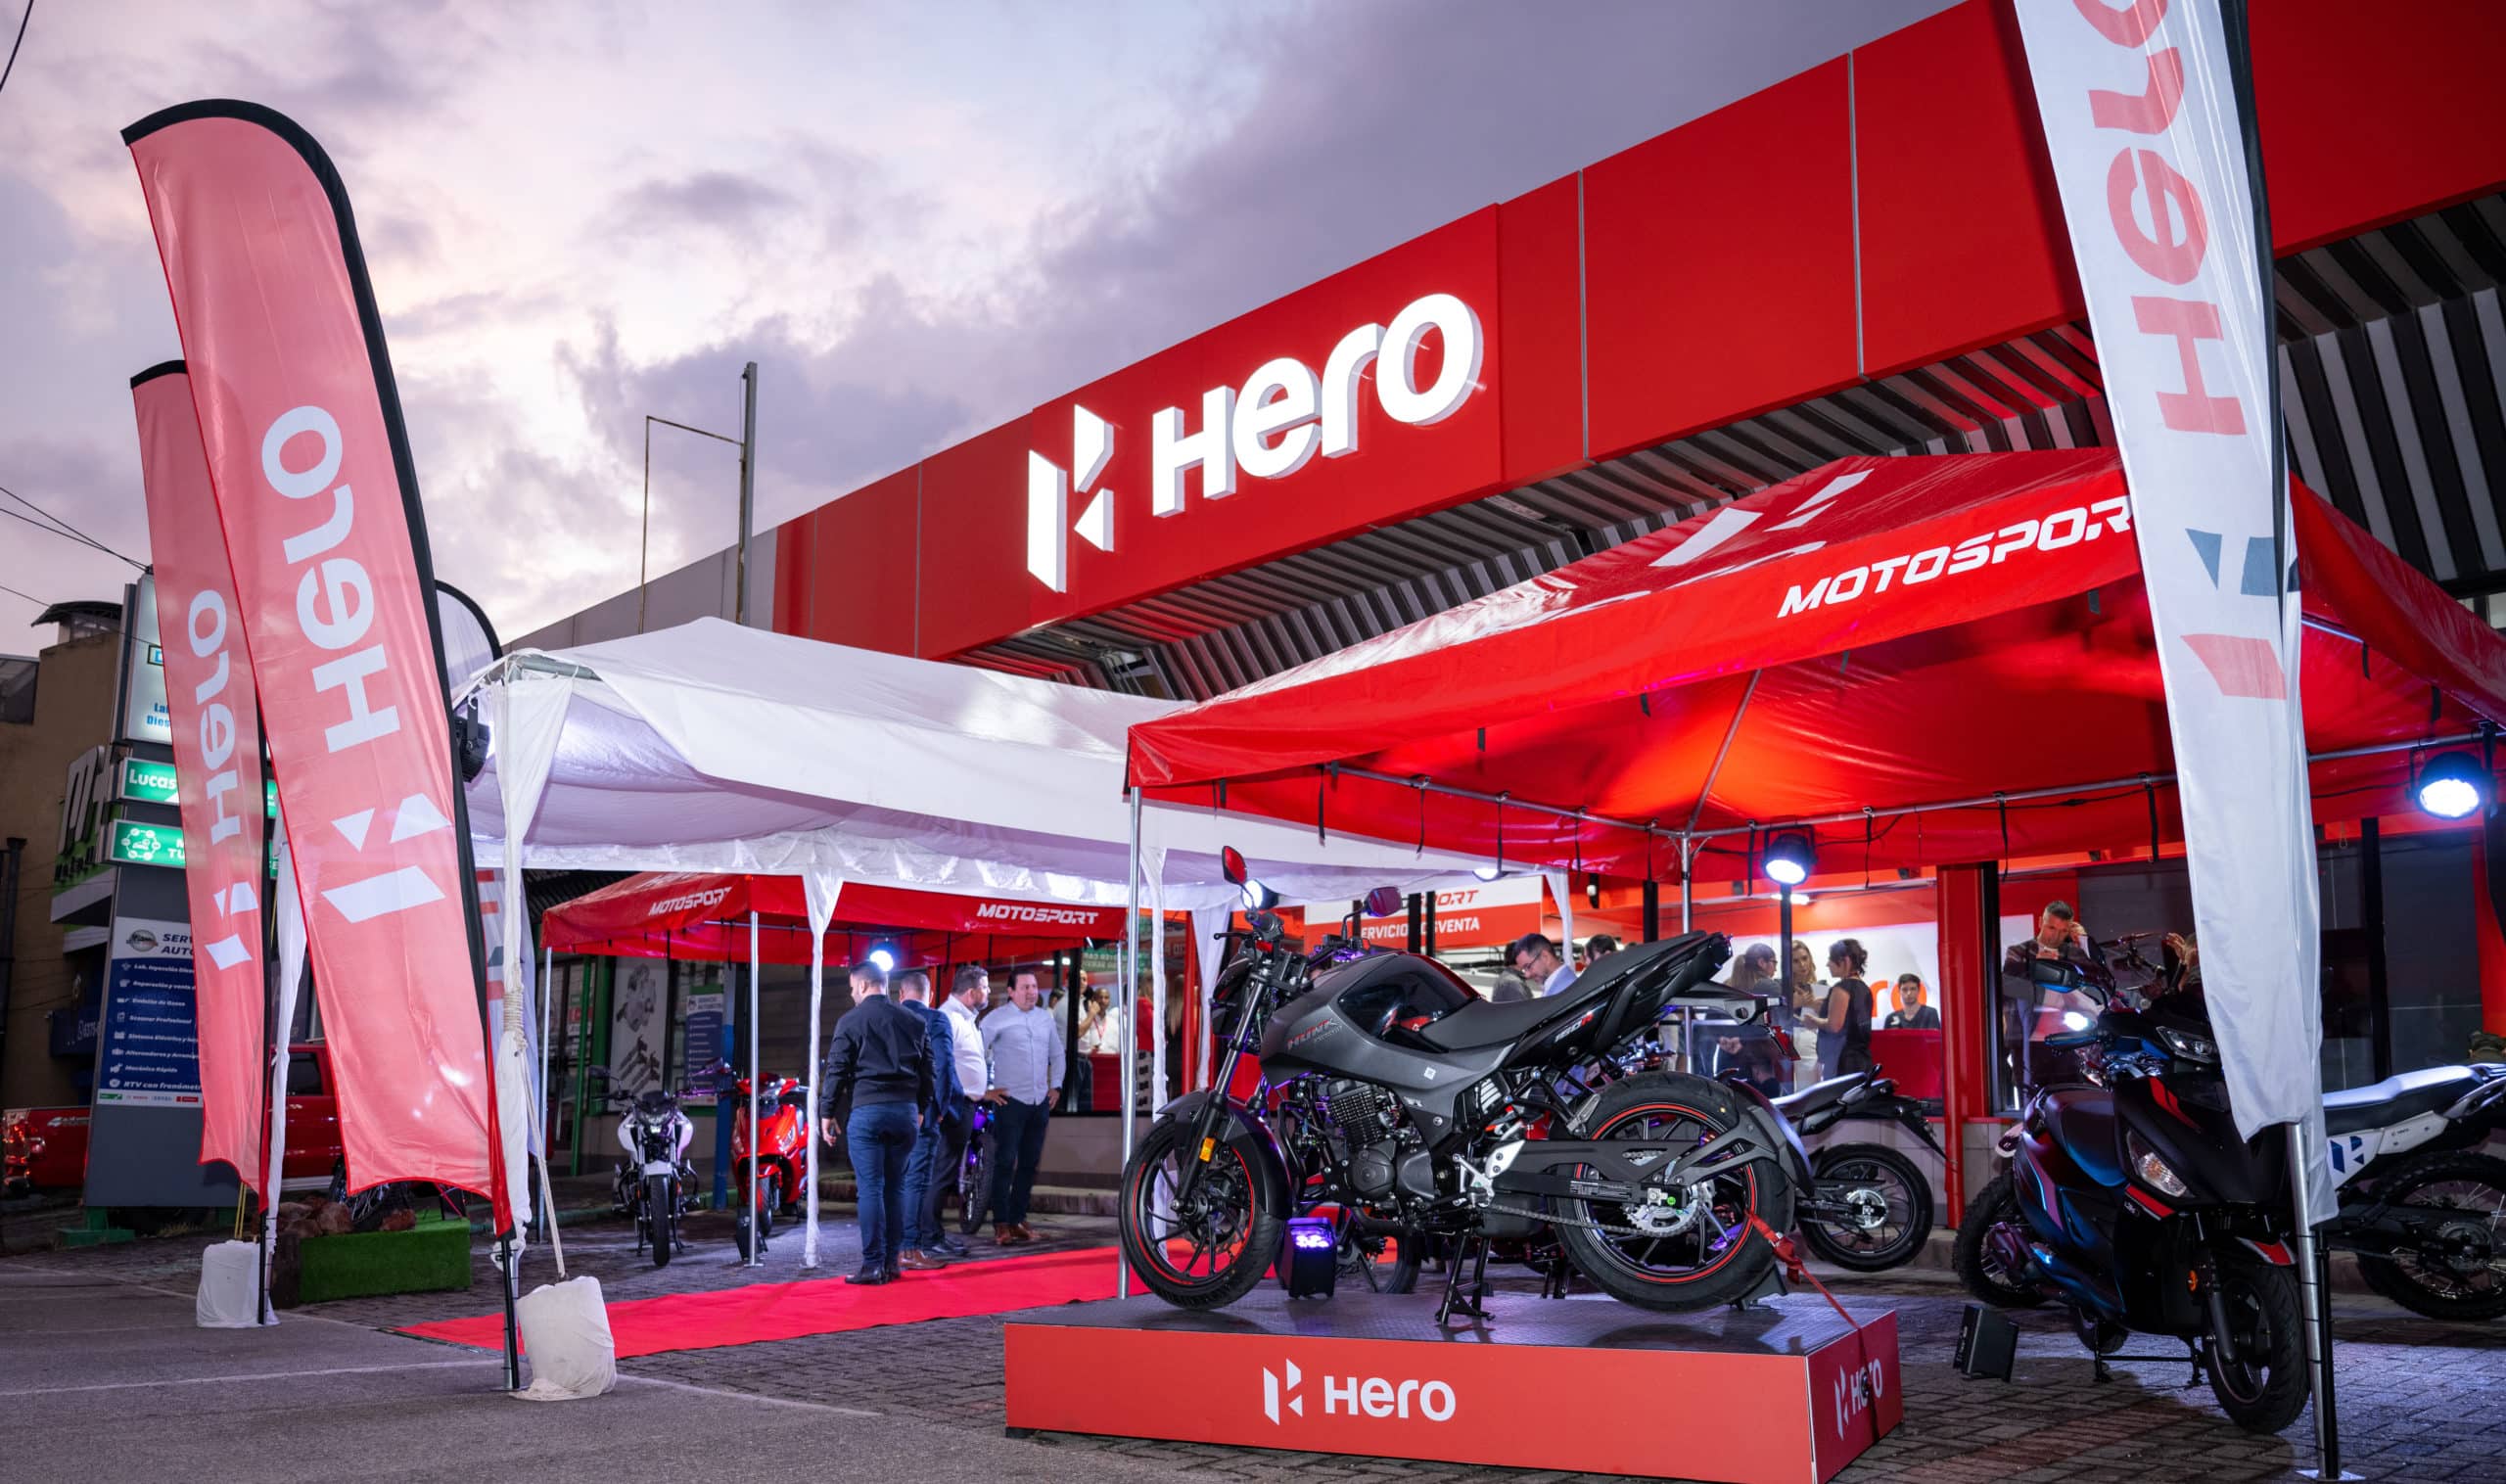 Empresa Motosport asume distribución de marca india de motos Hero y anuncia expansión en el país